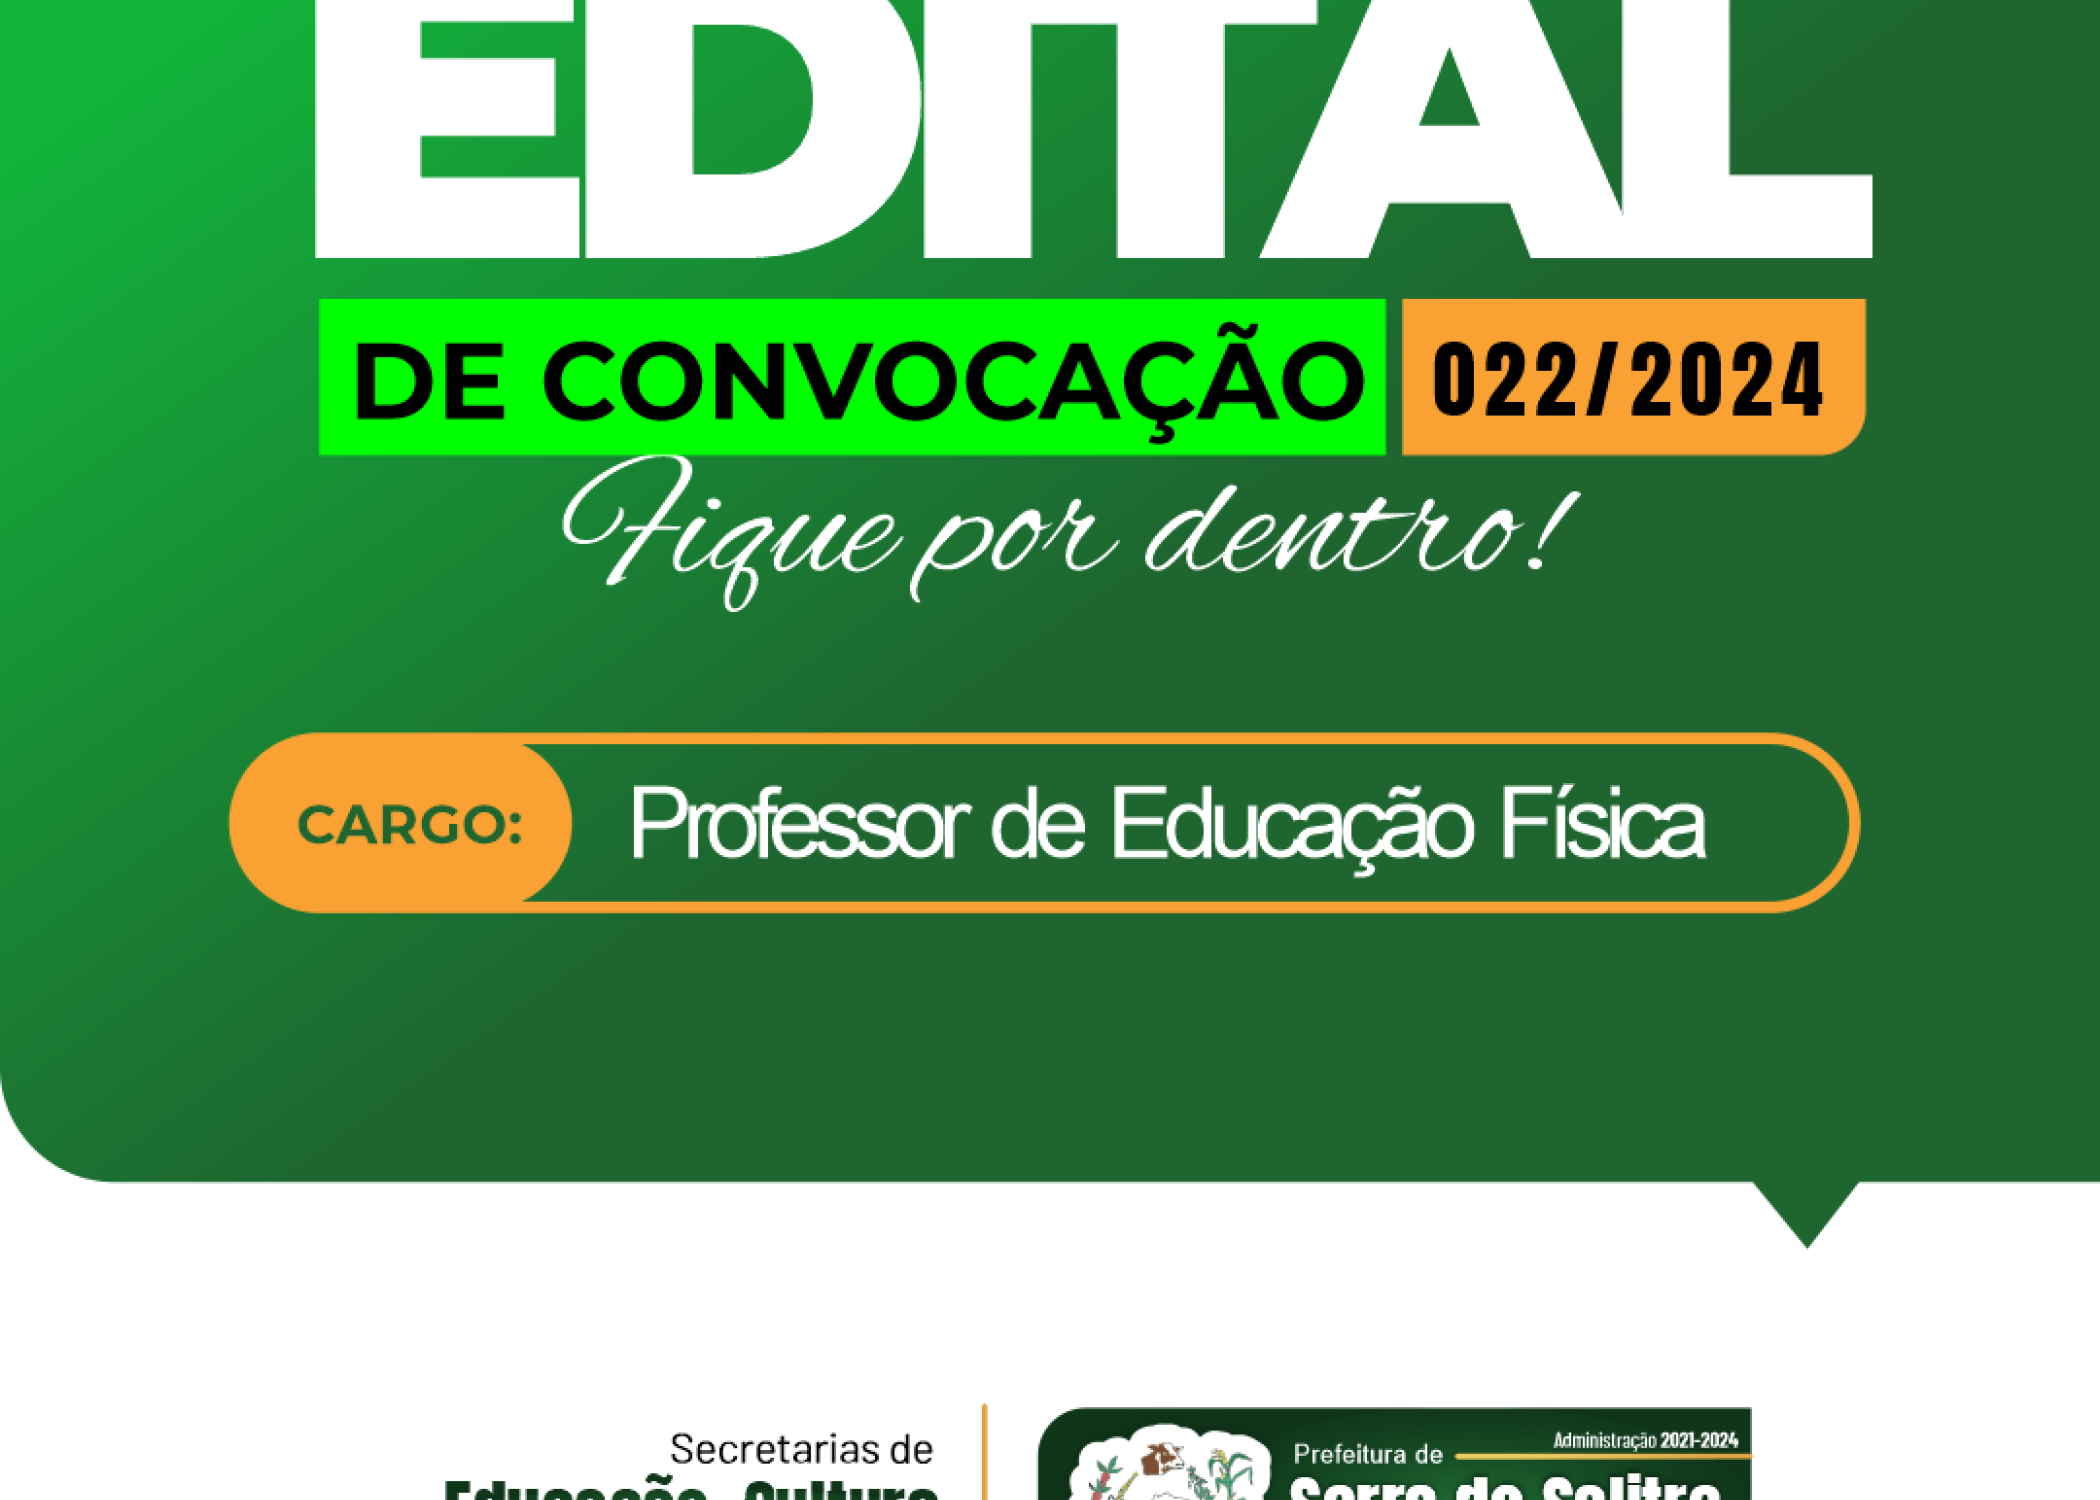 EDITAL DE CONVOCAÇÃO 022/2024 - PROFESSOR DE EDUCAÇÃO FÍSICA